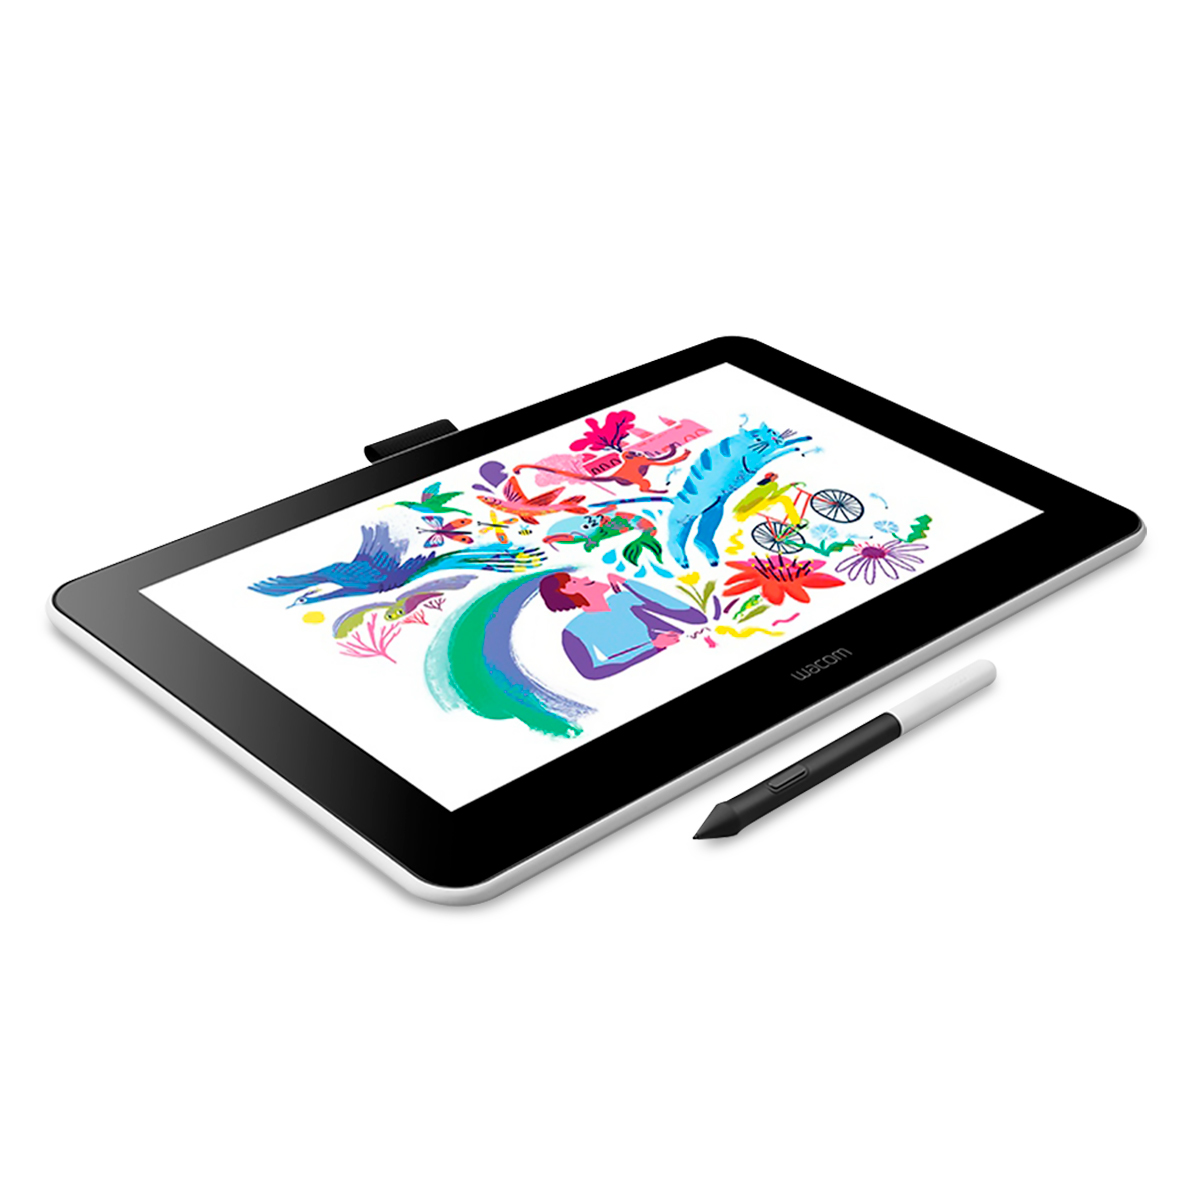 Apéndice retroceder Tecnología Tableta Gráfica Wacom One Creative Pen Display 13.3 Pulg. Windows iOS  Android Blanco | Office Depot Mexico